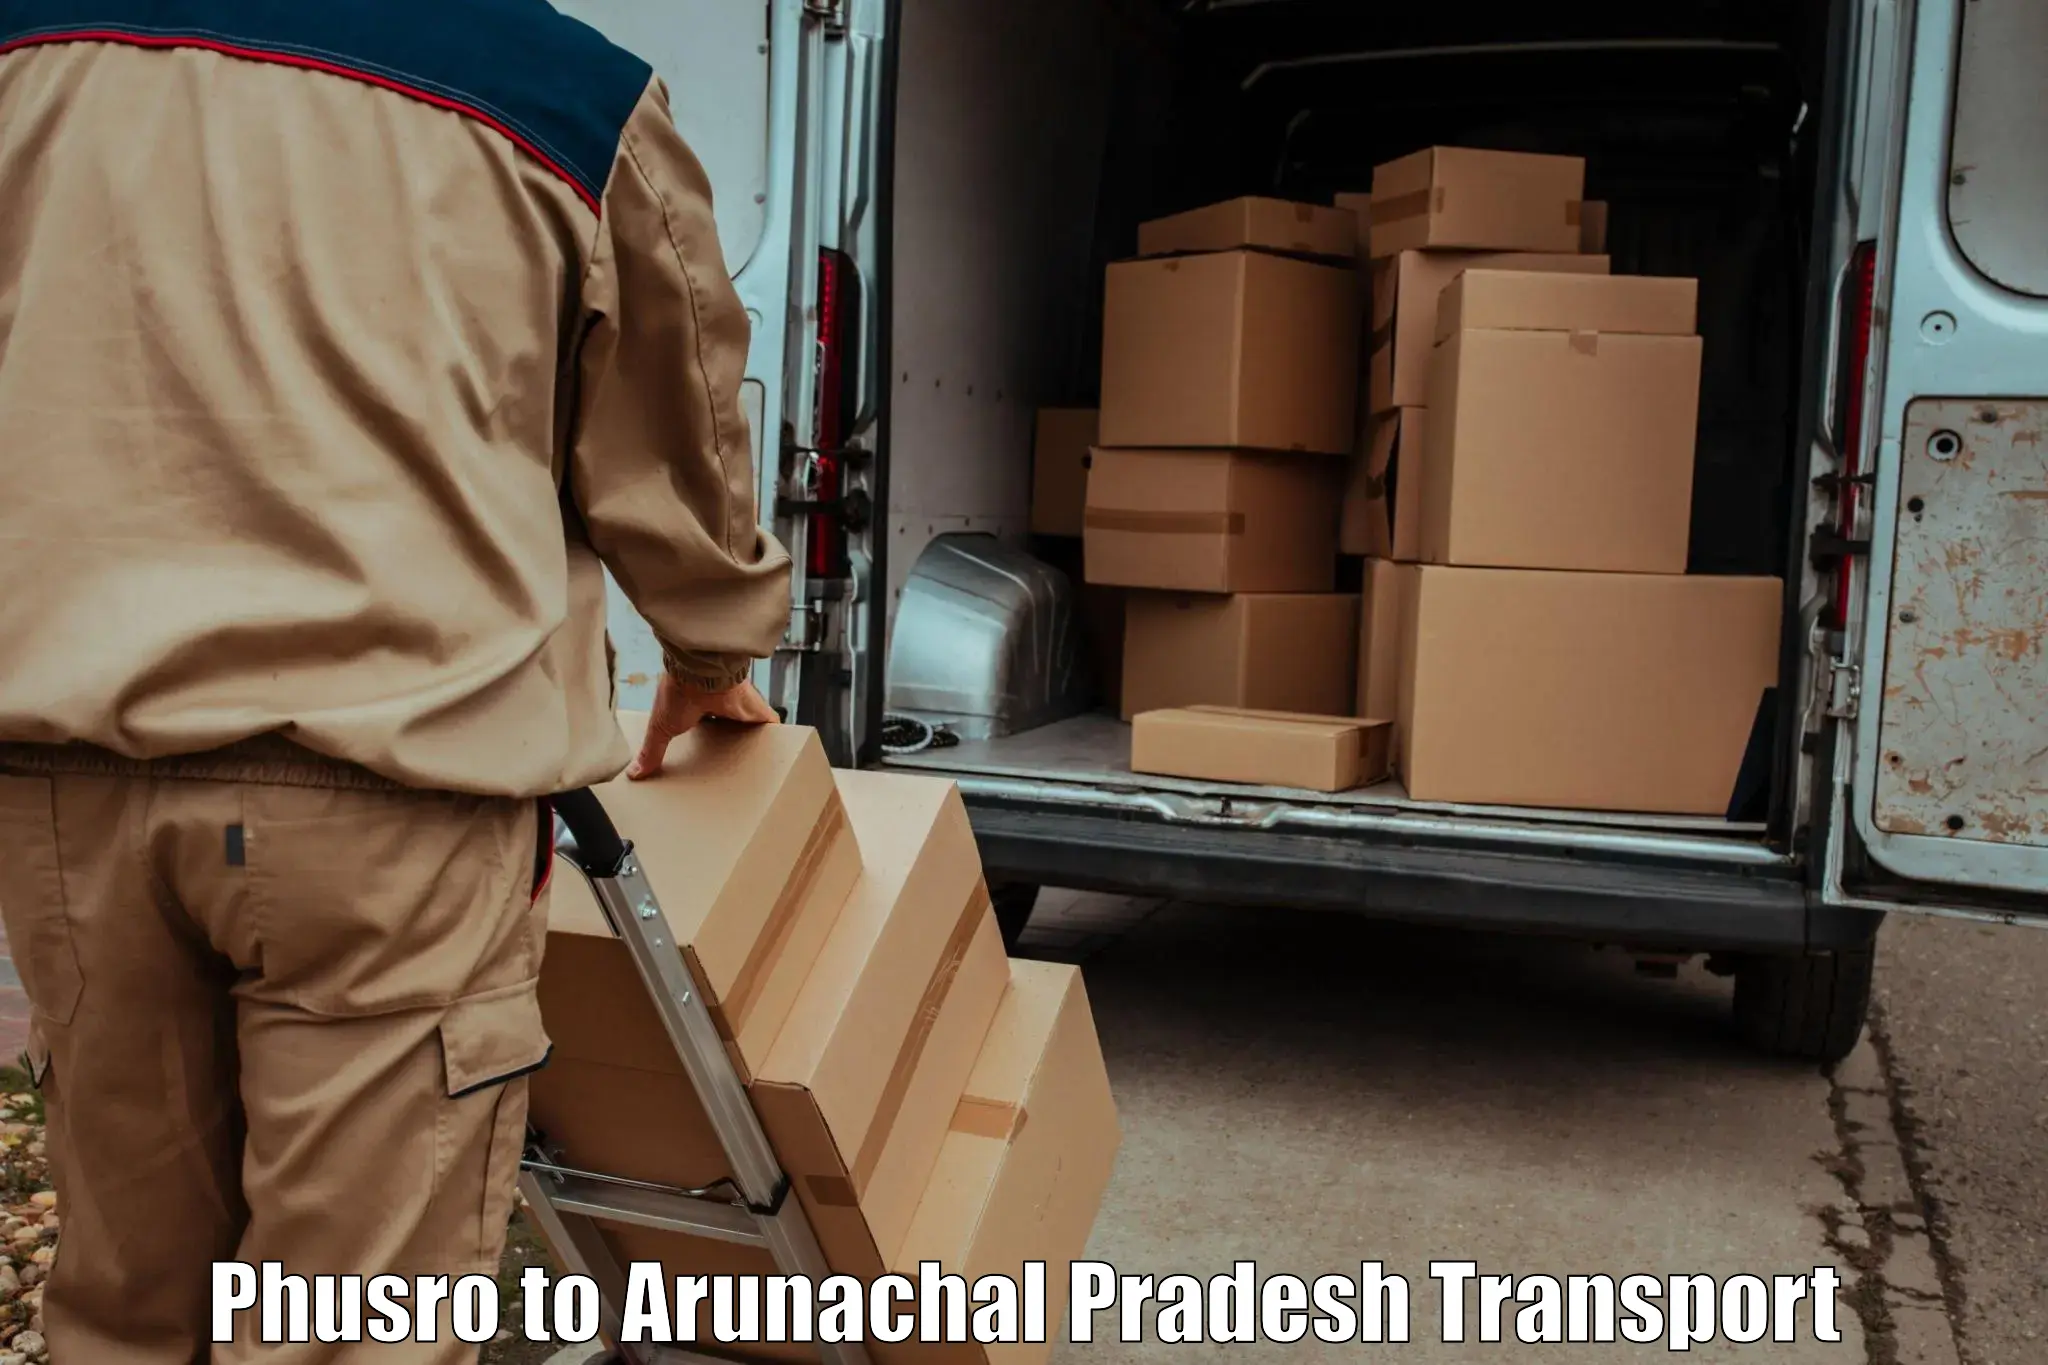 Nearby transport service Phusro to Arunachal Pradesh